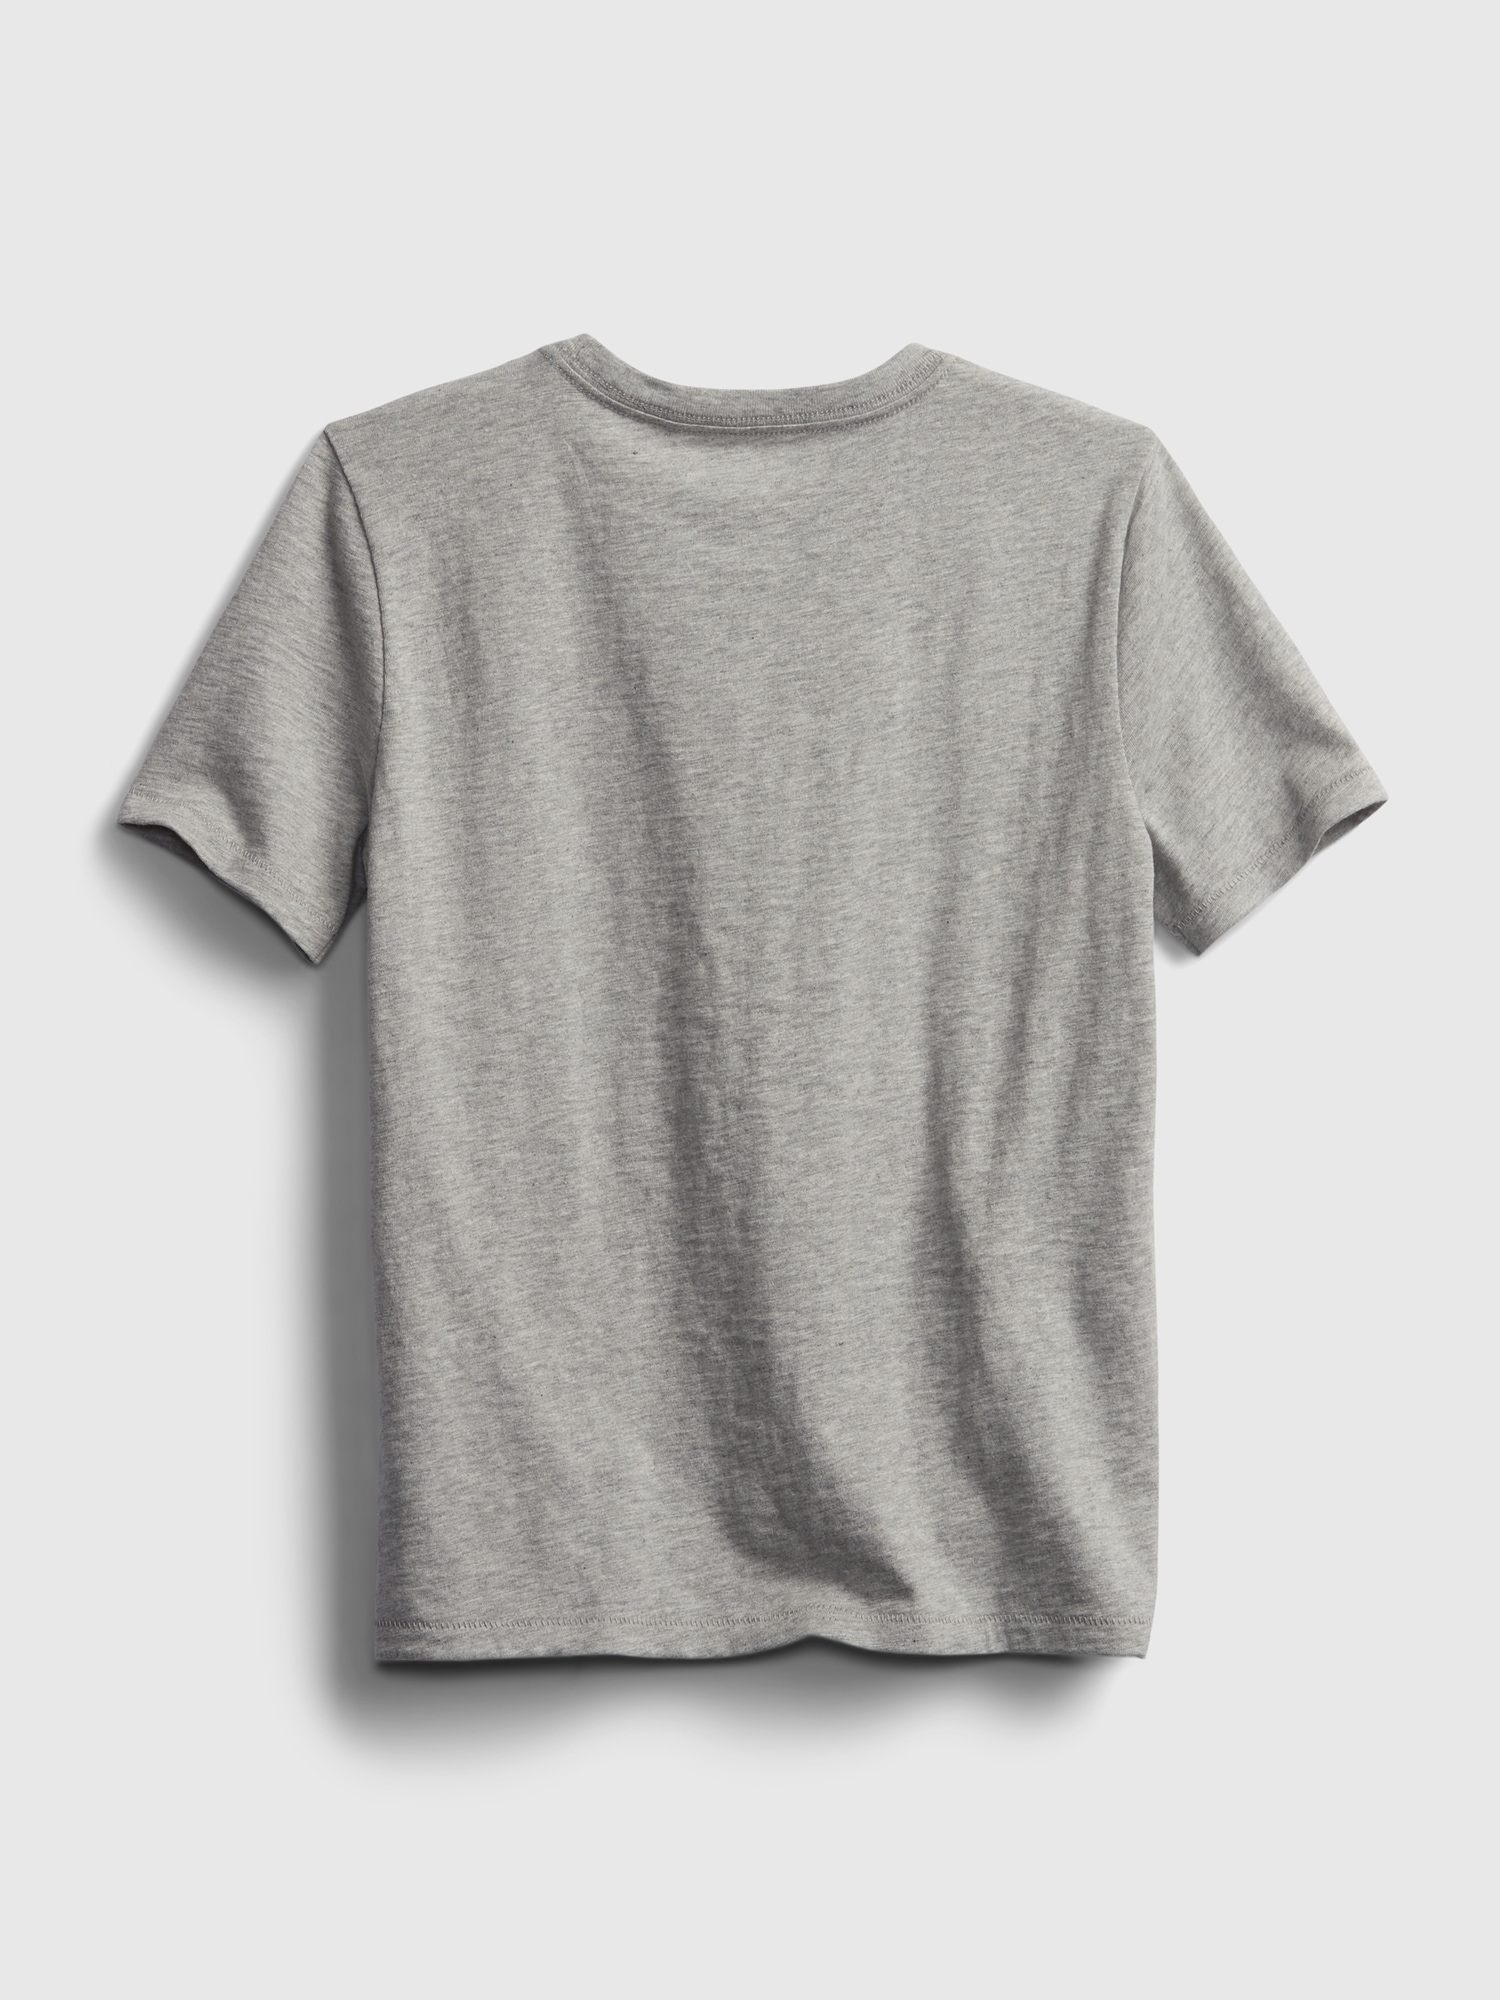 Kids Pocket T-Shirt | Gap